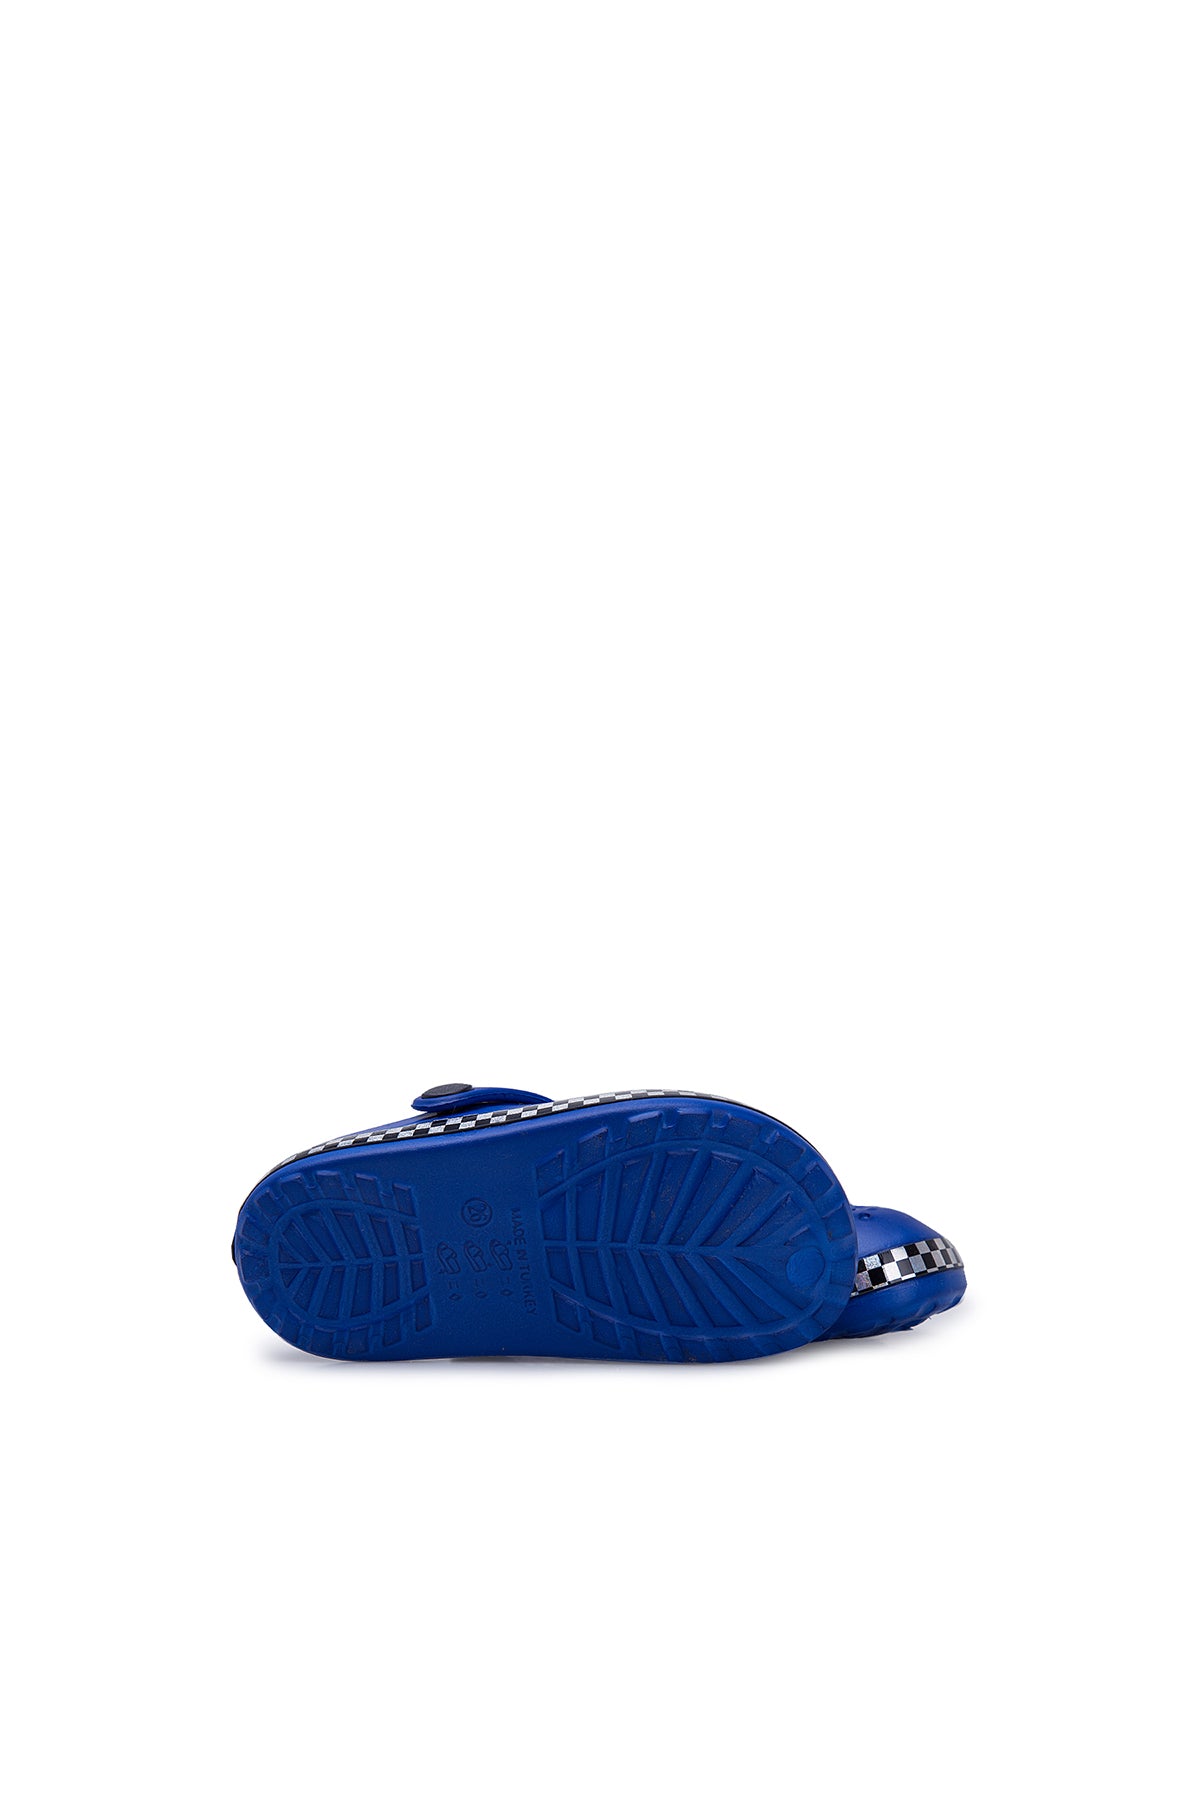 Akınalbella Çocuk Sandalet E060P106 Mavi-Gümüş-Siyah